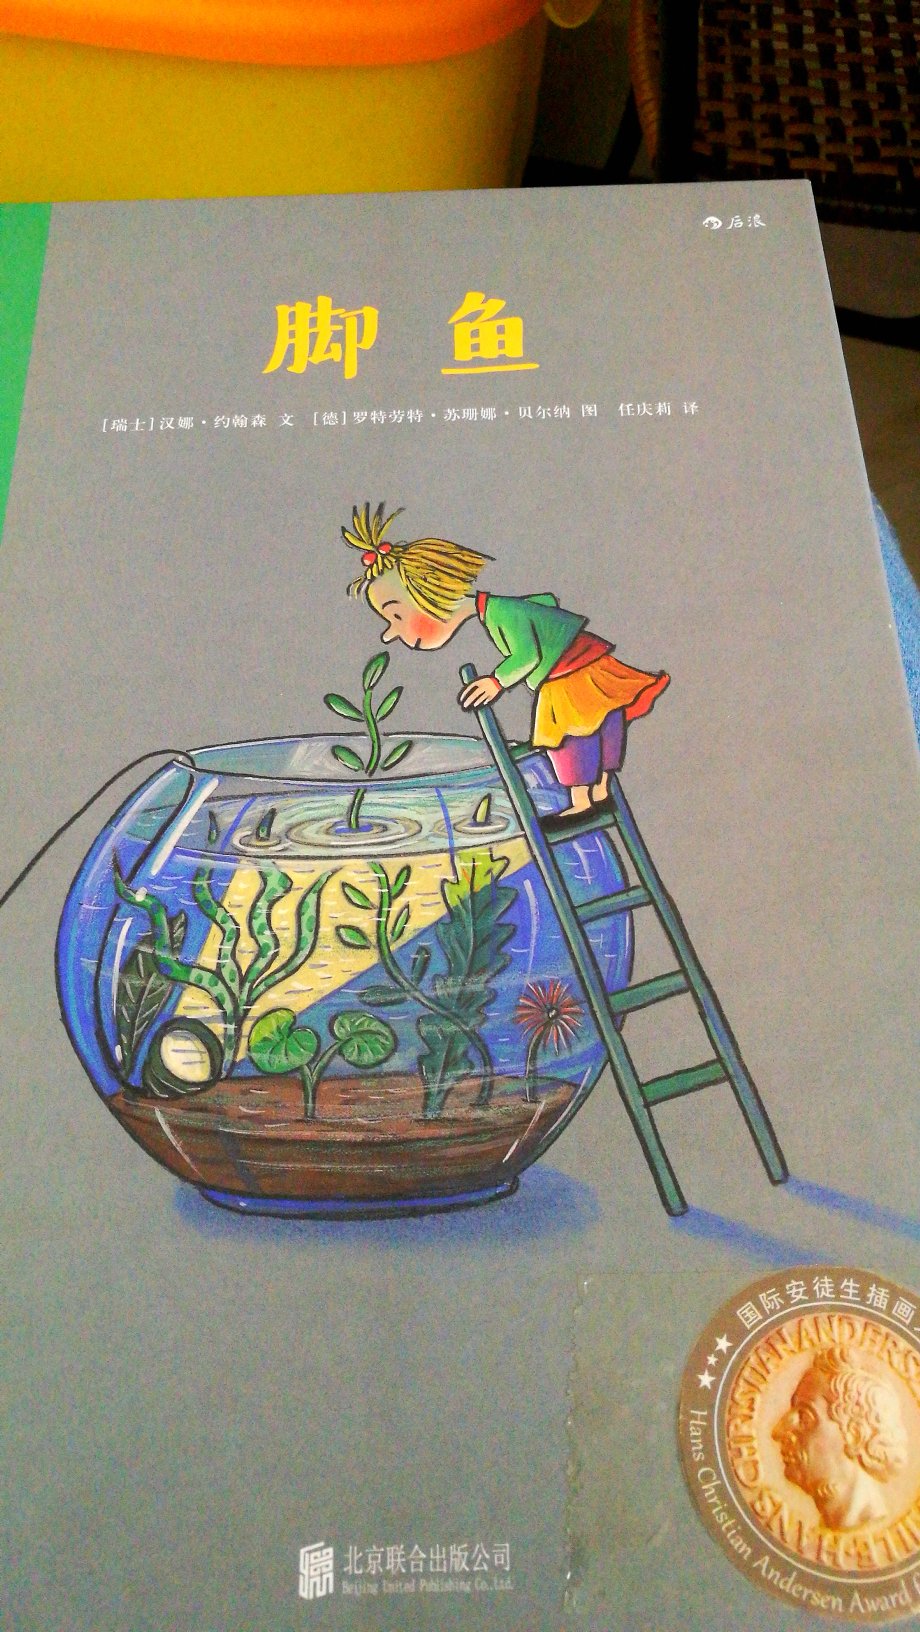 脚鱼我还以为是我们老家叫的团鱼 甲鱼，我还特意把安徒生插画大奖的标签胶在上面了